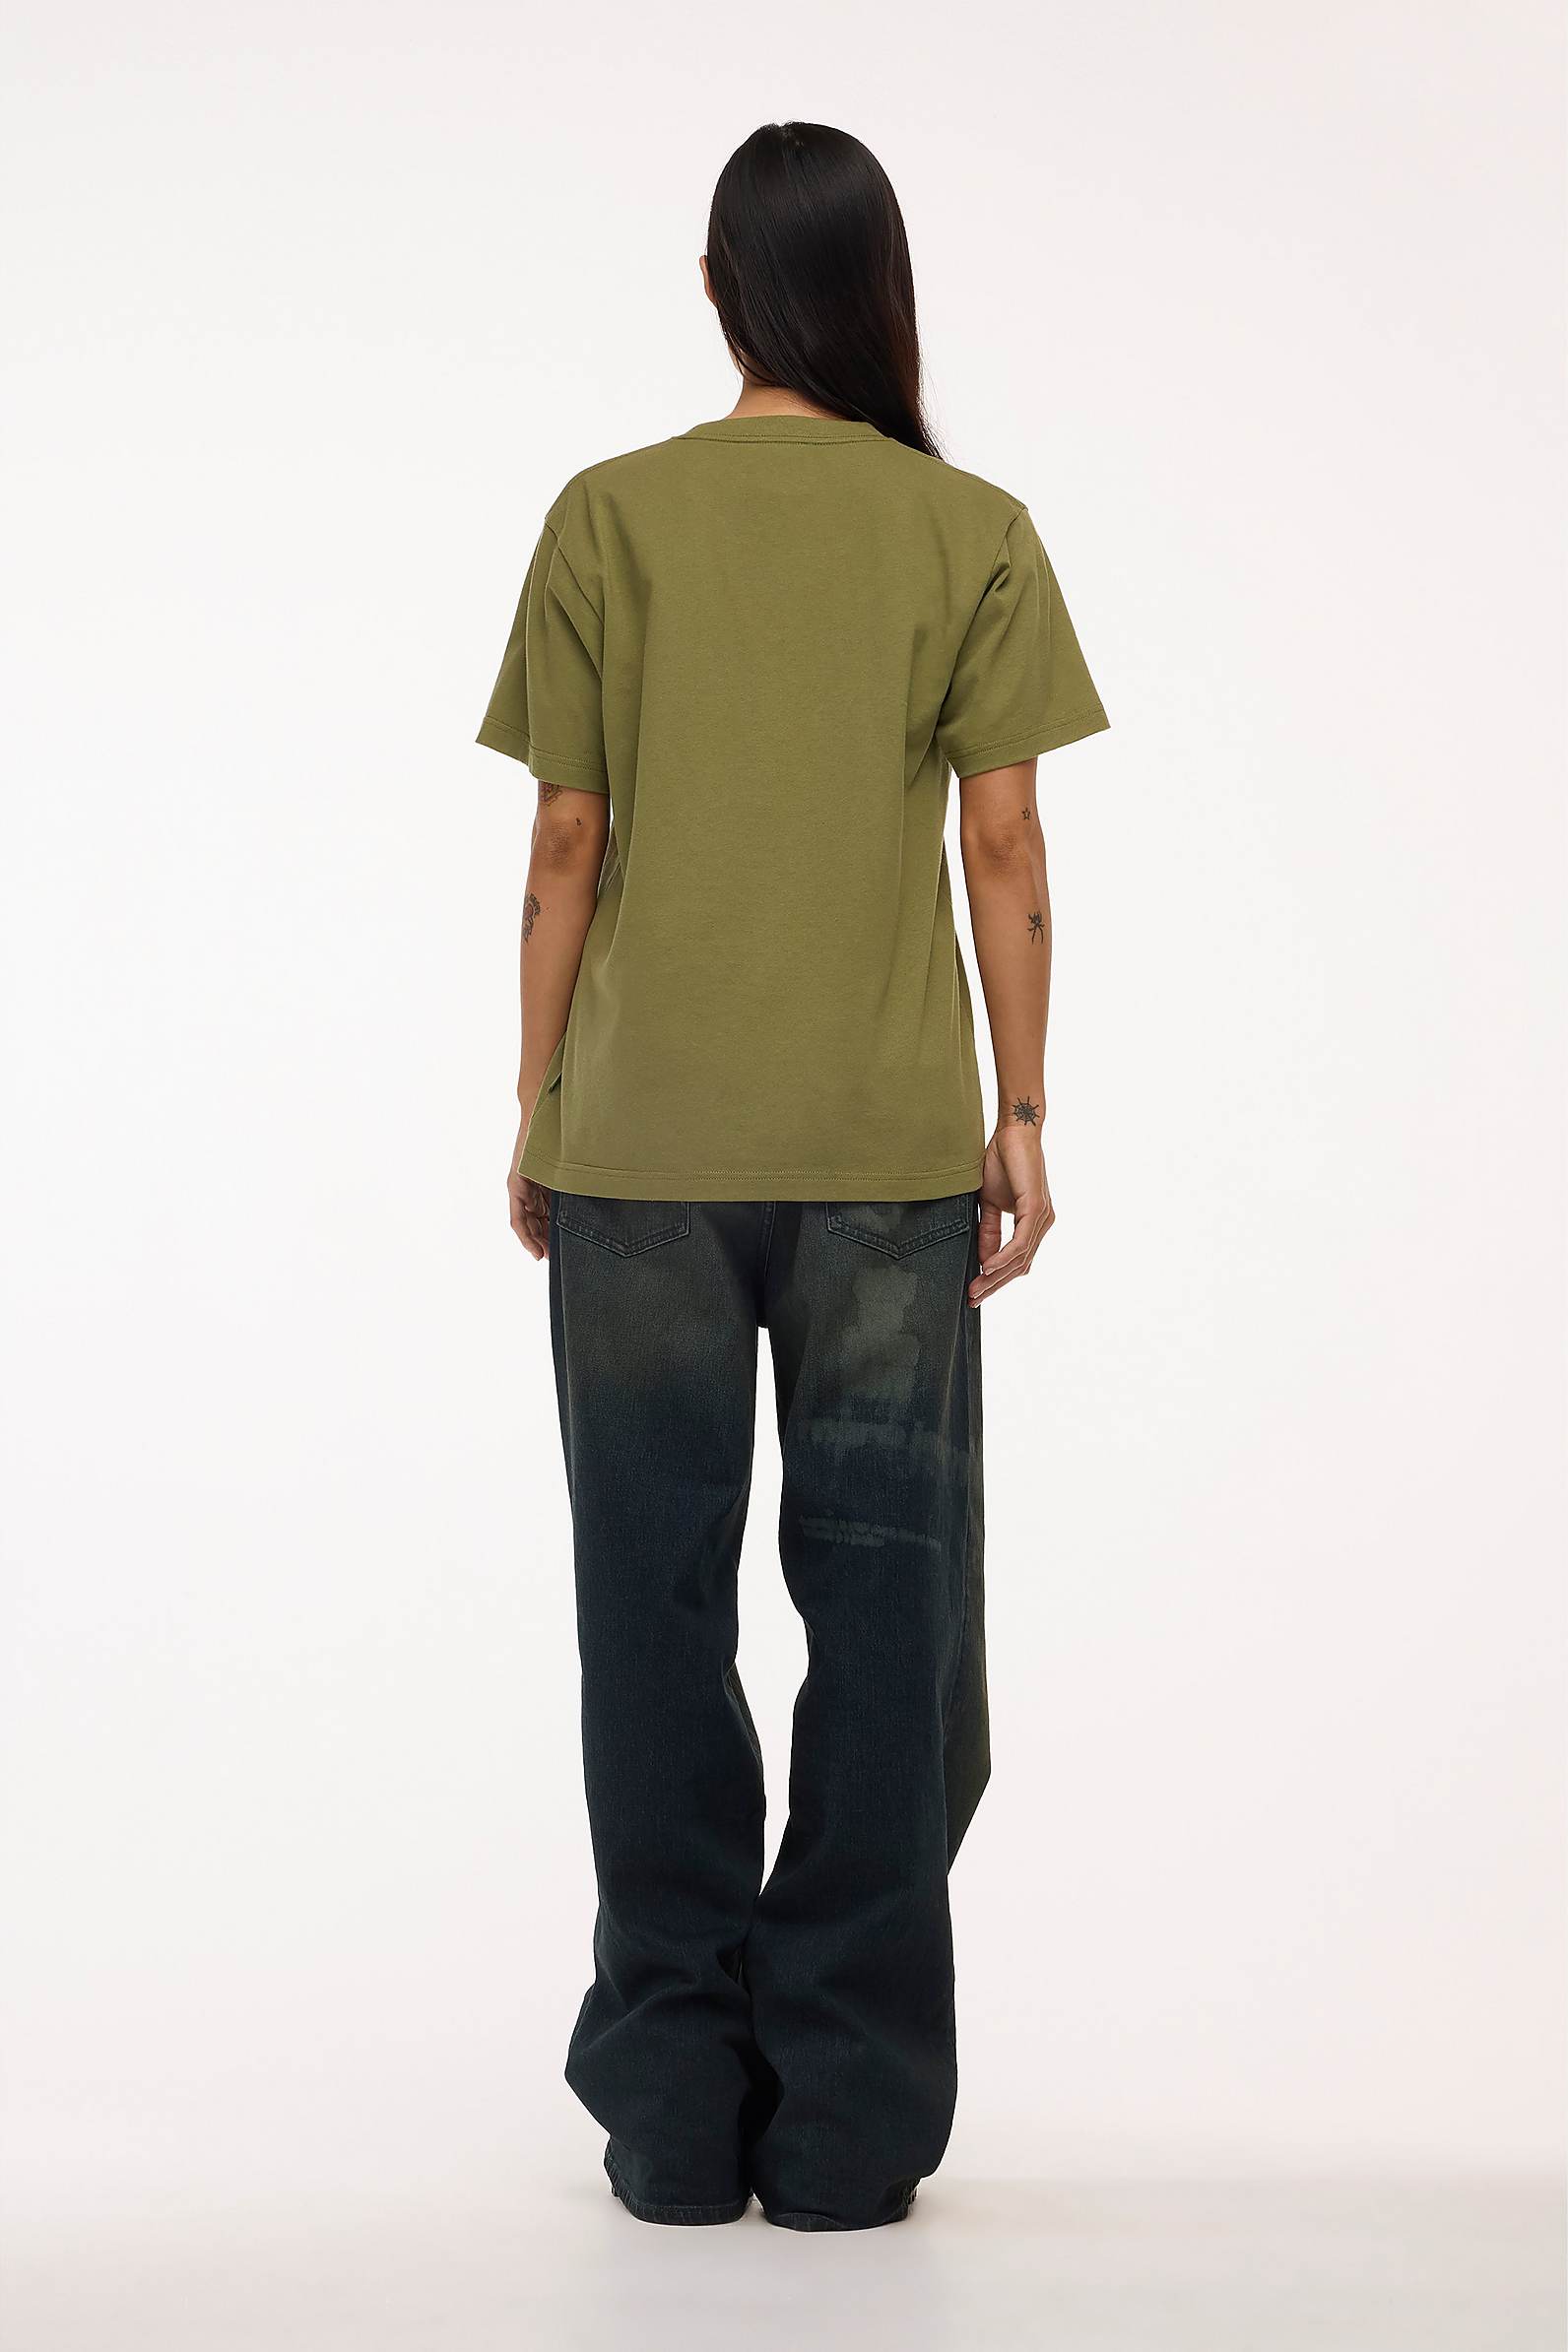 マークジェイコブス 近年 Tシャツ 半袖 HEAVEN GRAPHIC 黒 XS46cm身幅